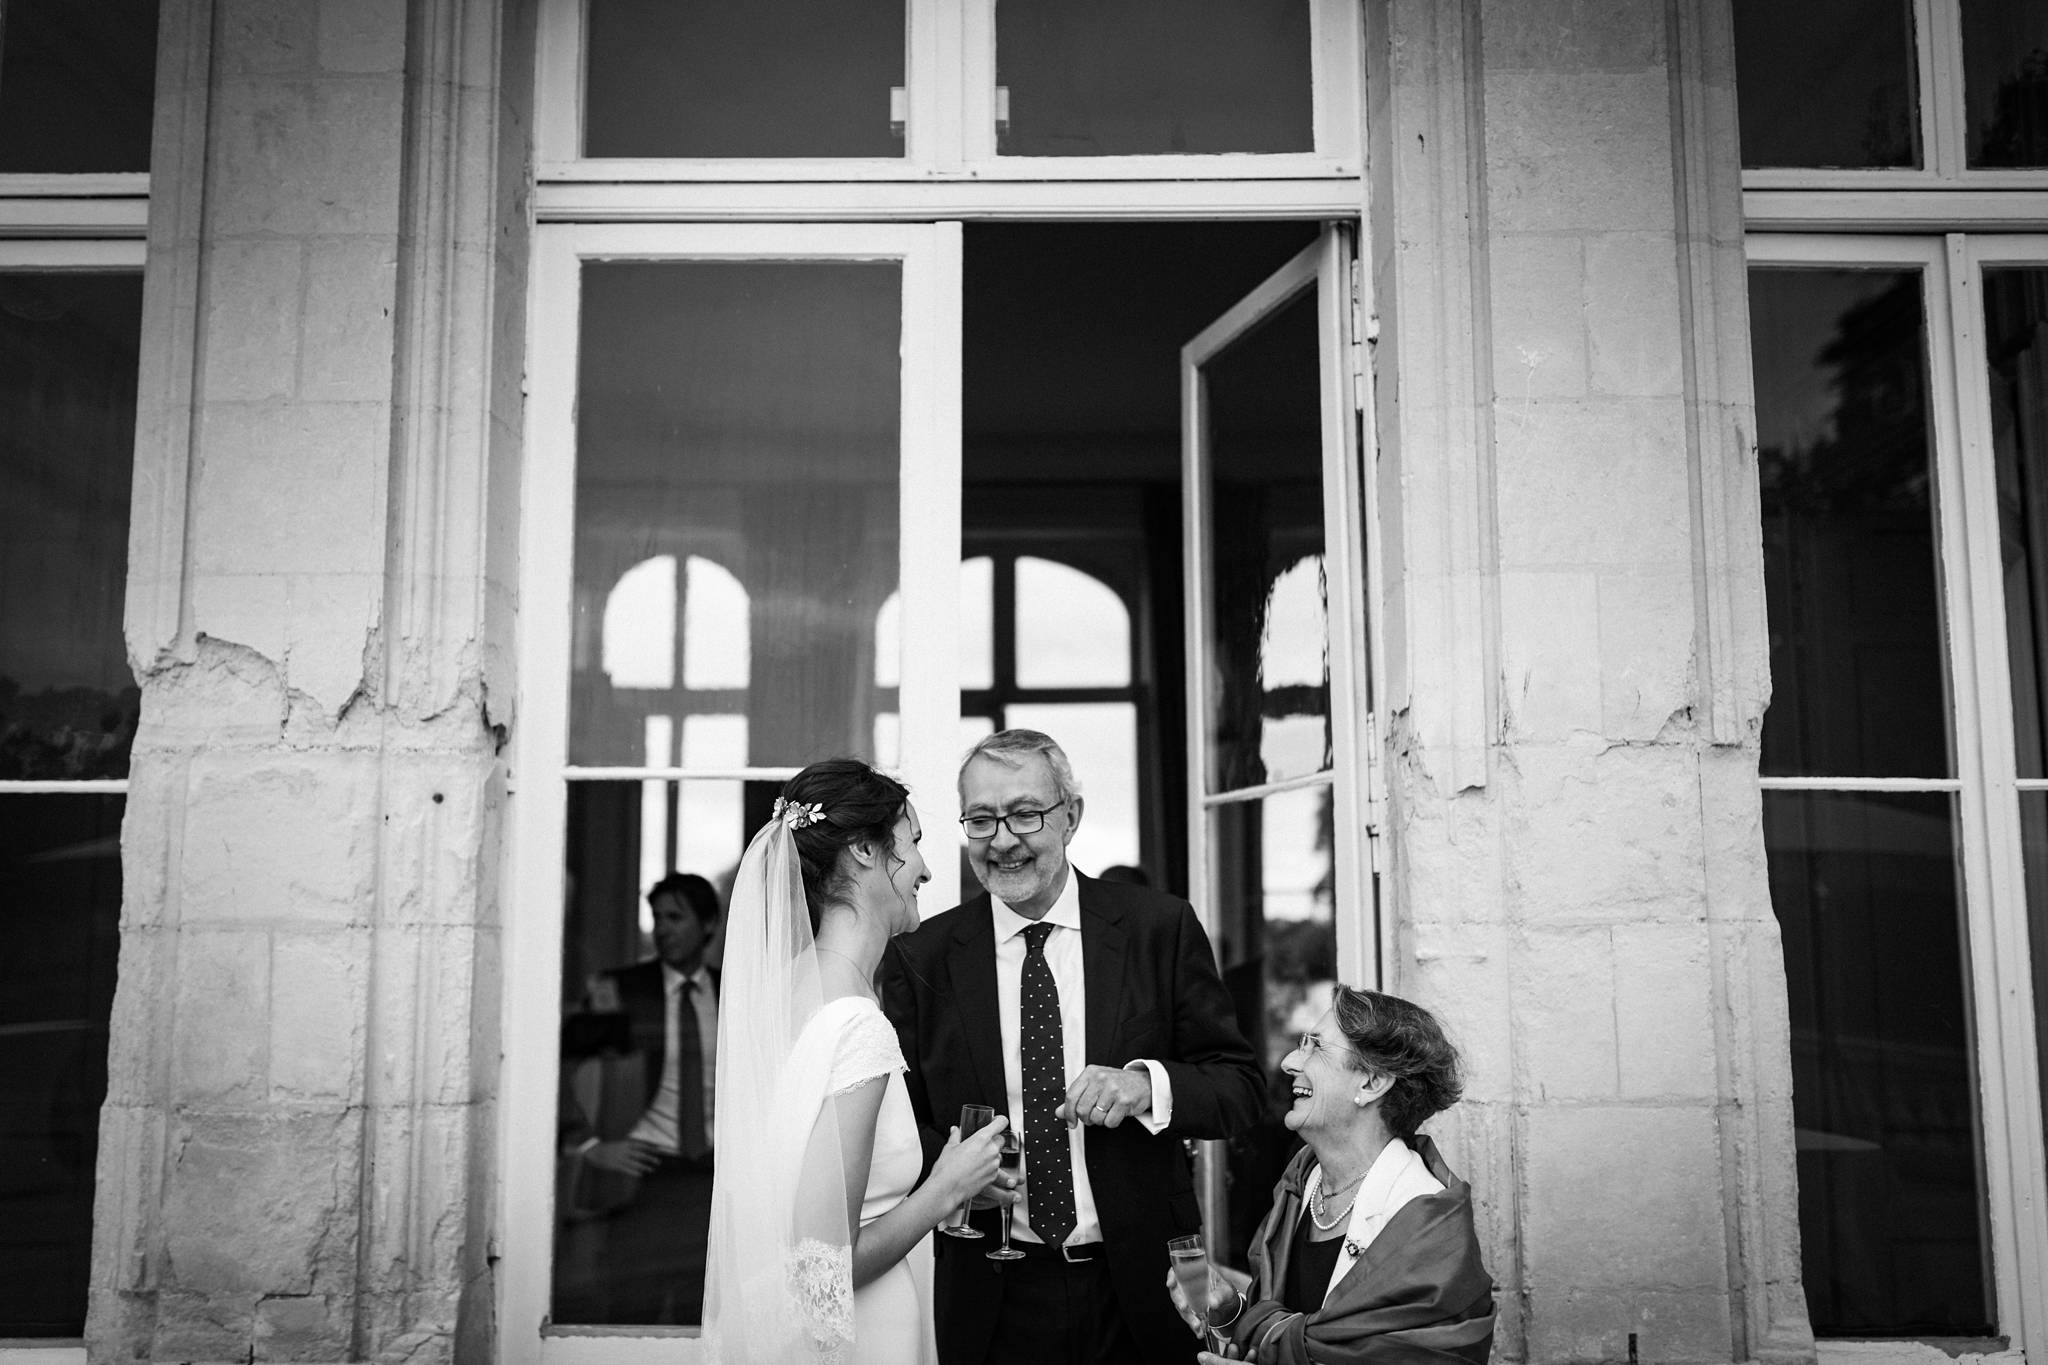 Reportage photos mariage de Hortense et Antoine au Palais Briau à Varades, à l'Abbatiale de Saint Florent-le-Vieil puis au Château de Vair à Anetz.